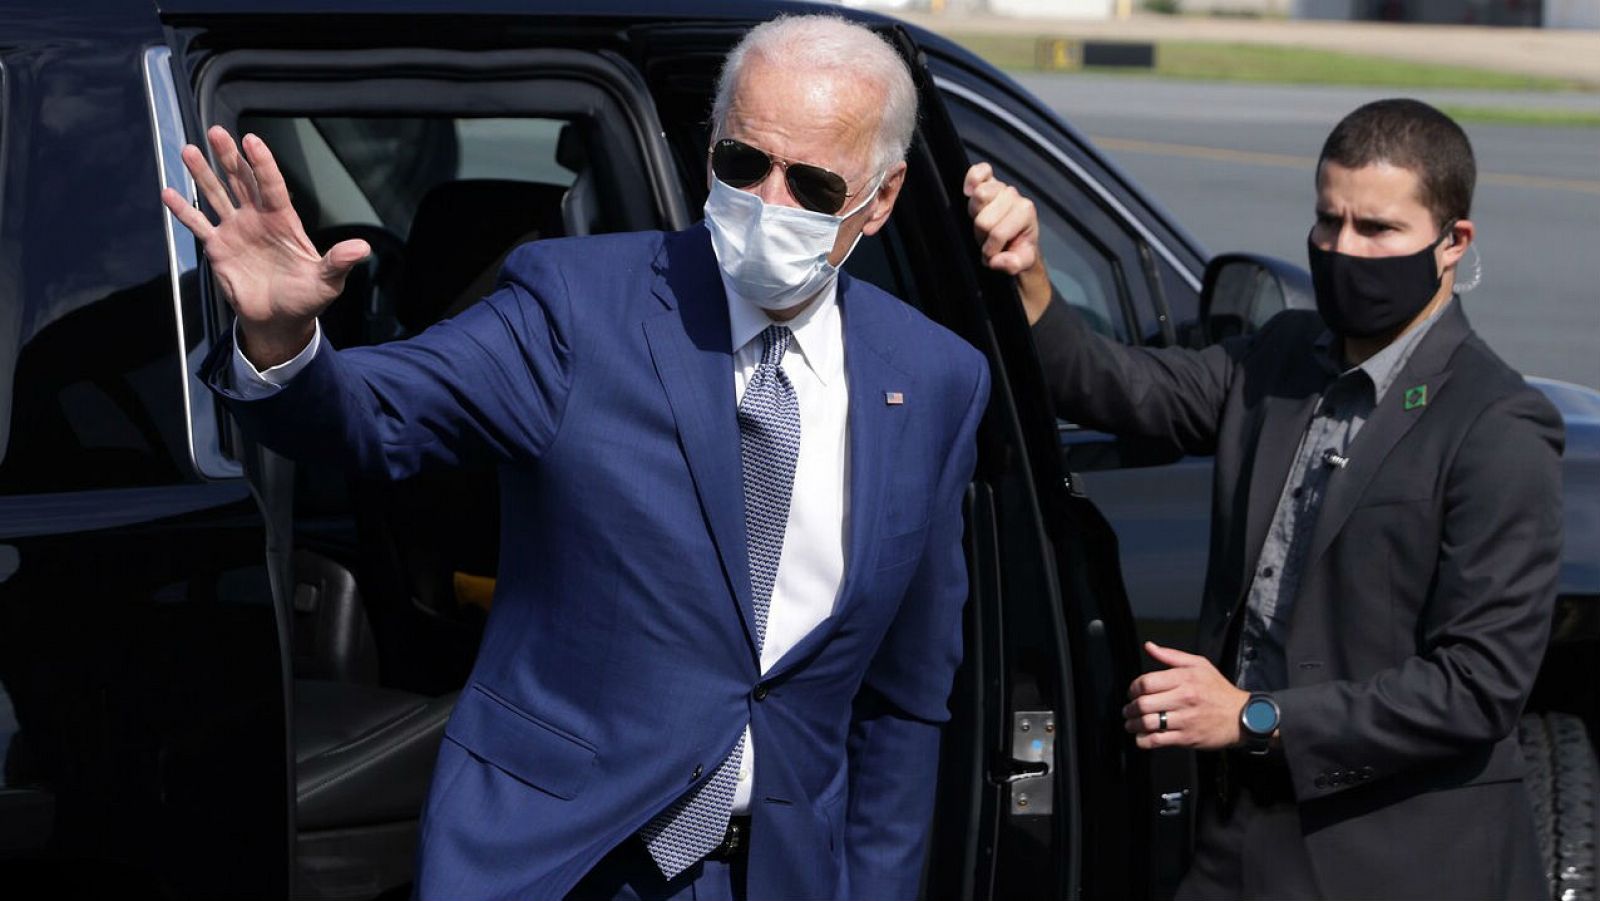 El candidato demócrata a la presidencia de los Estados Unidos, Joe Biden, saluda al llegar al aeropuerto del condado de New Castle para su viaje a Kenosha, Wisconsin, EE.UU.